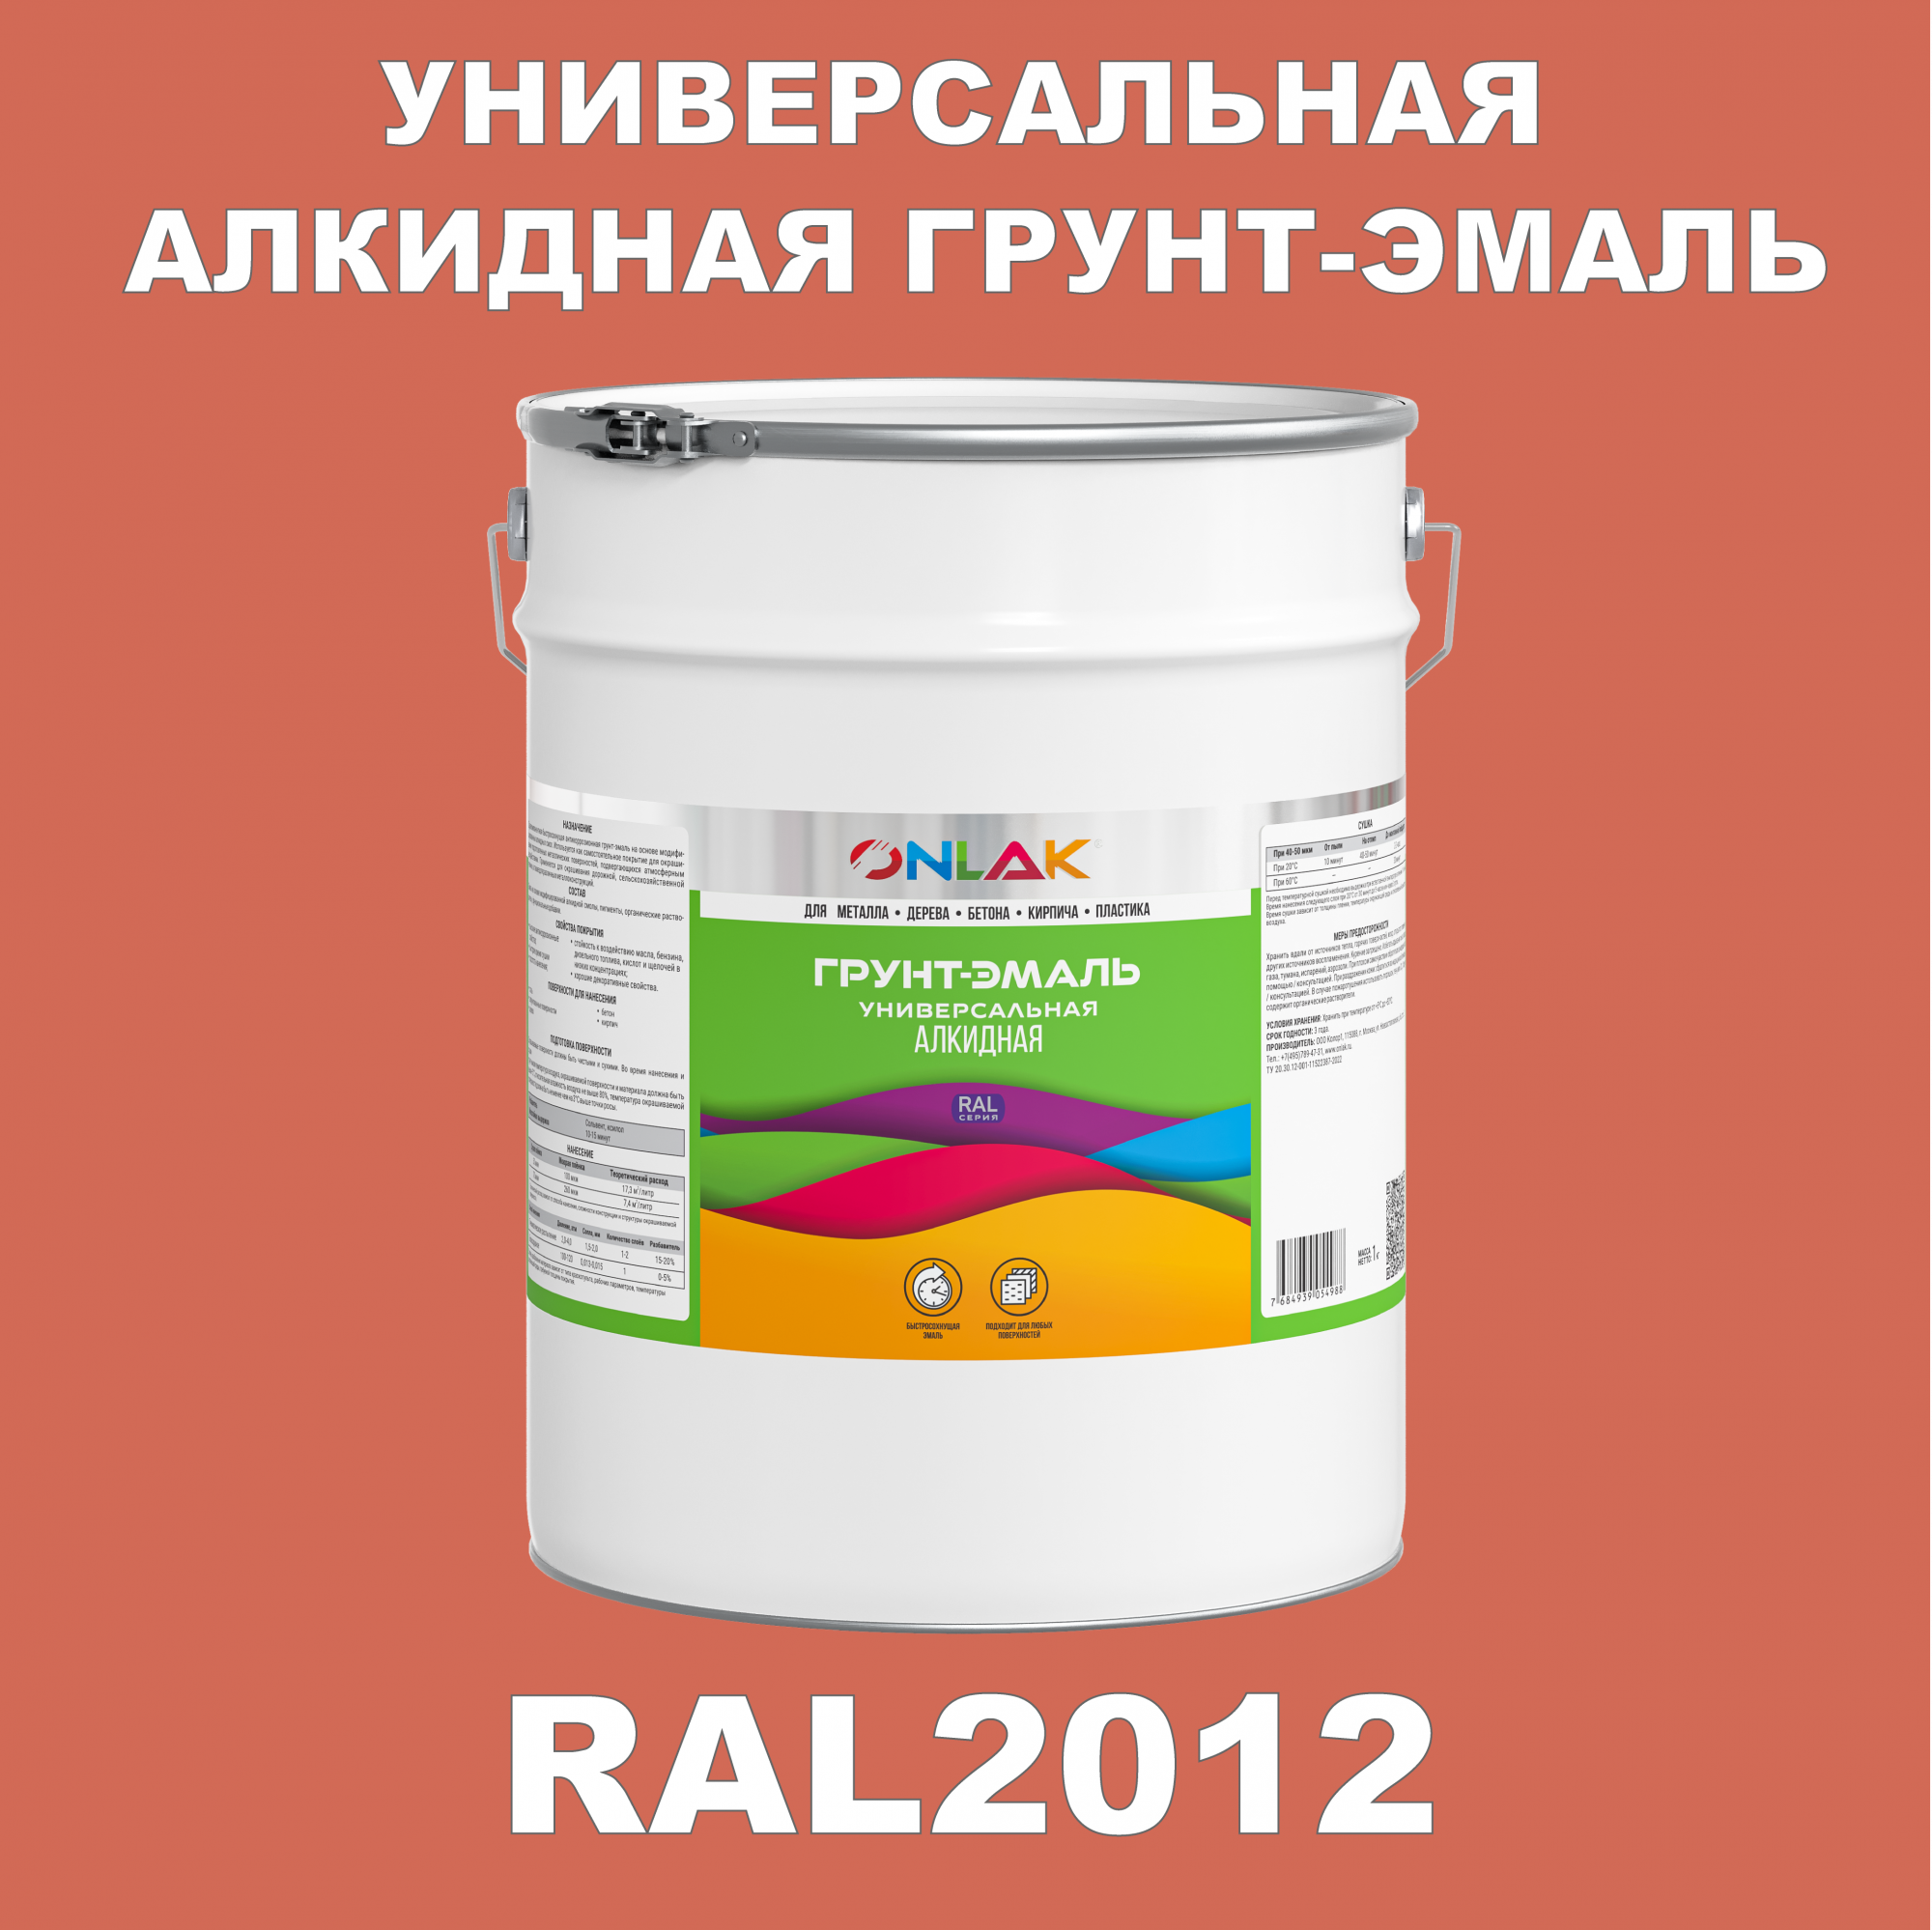 Грунт-эмаль ONLAK 1К RAL2012 антикоррозионная алкидная по металлу по ржавчине 20 кг грунт эмаль аэрозольная престиж 3в1 алкидная коричневая ral 8017 425 мл 0 425 кг